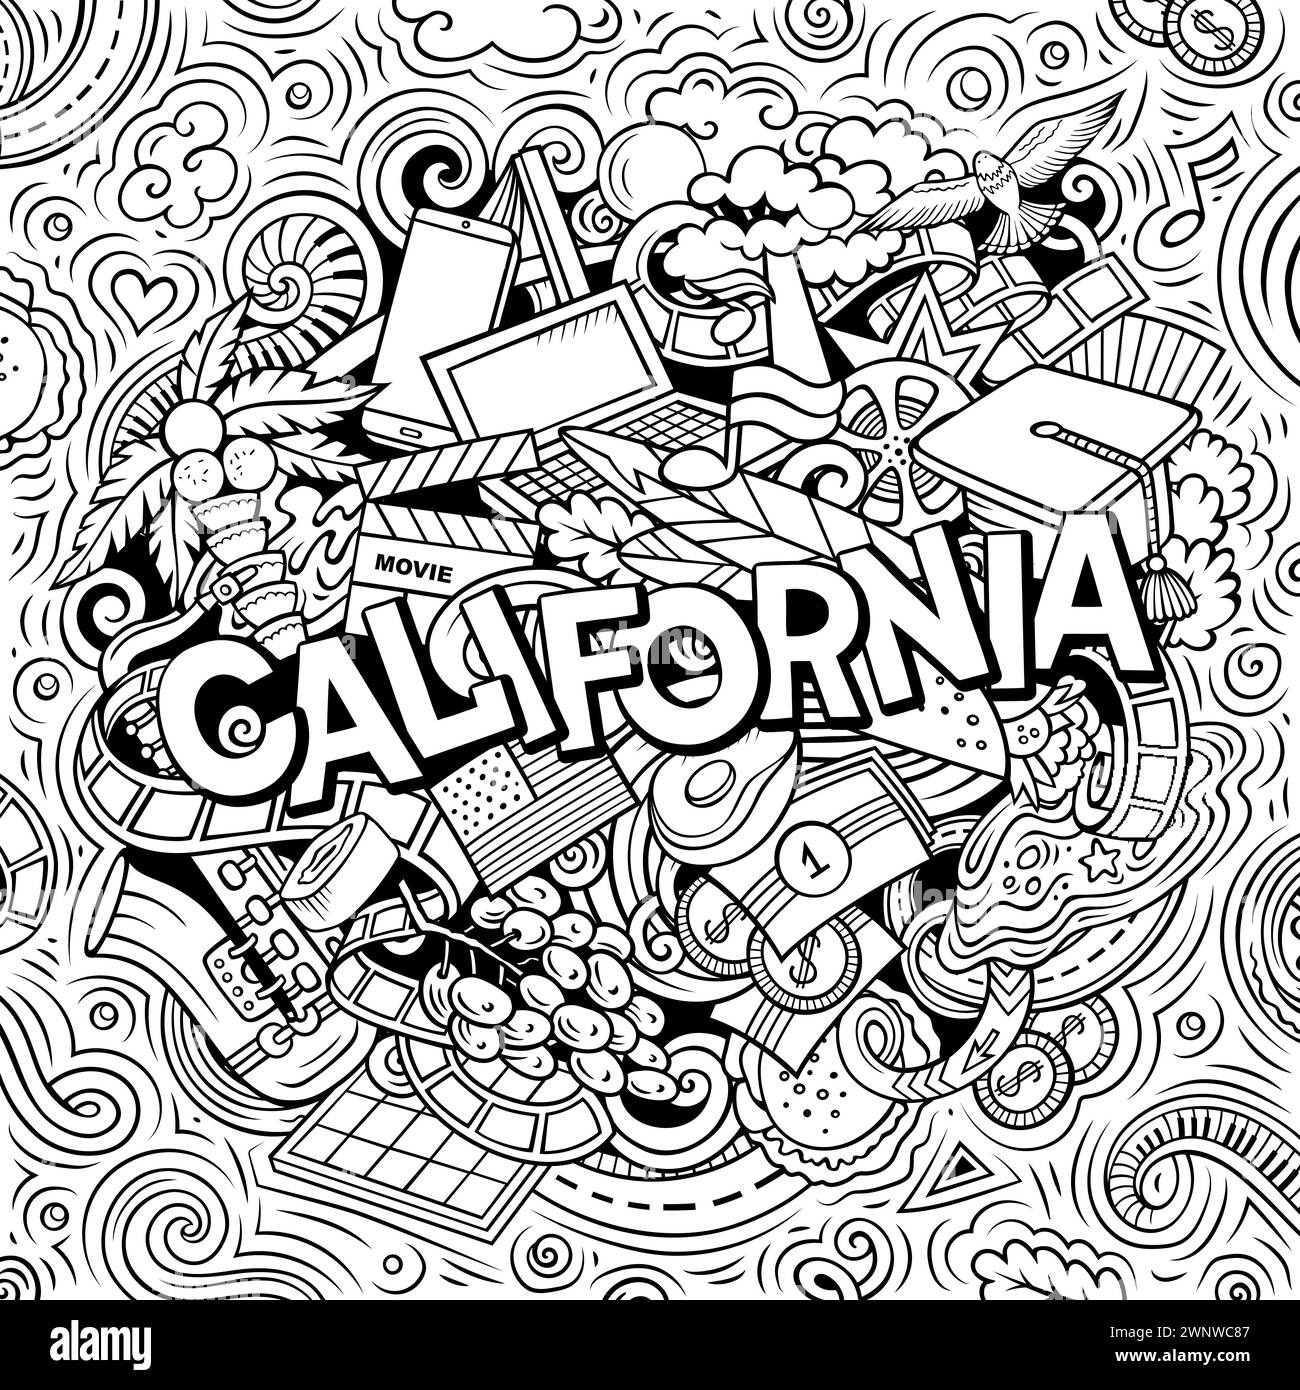 California dibujado a mano ilustración de doodle de dibujos animados. Divertido EE.UU. Diseño de estado. Arte creativo vector de fondo. Texto manuscrito con elementos y objetos. Ilustración del Vector